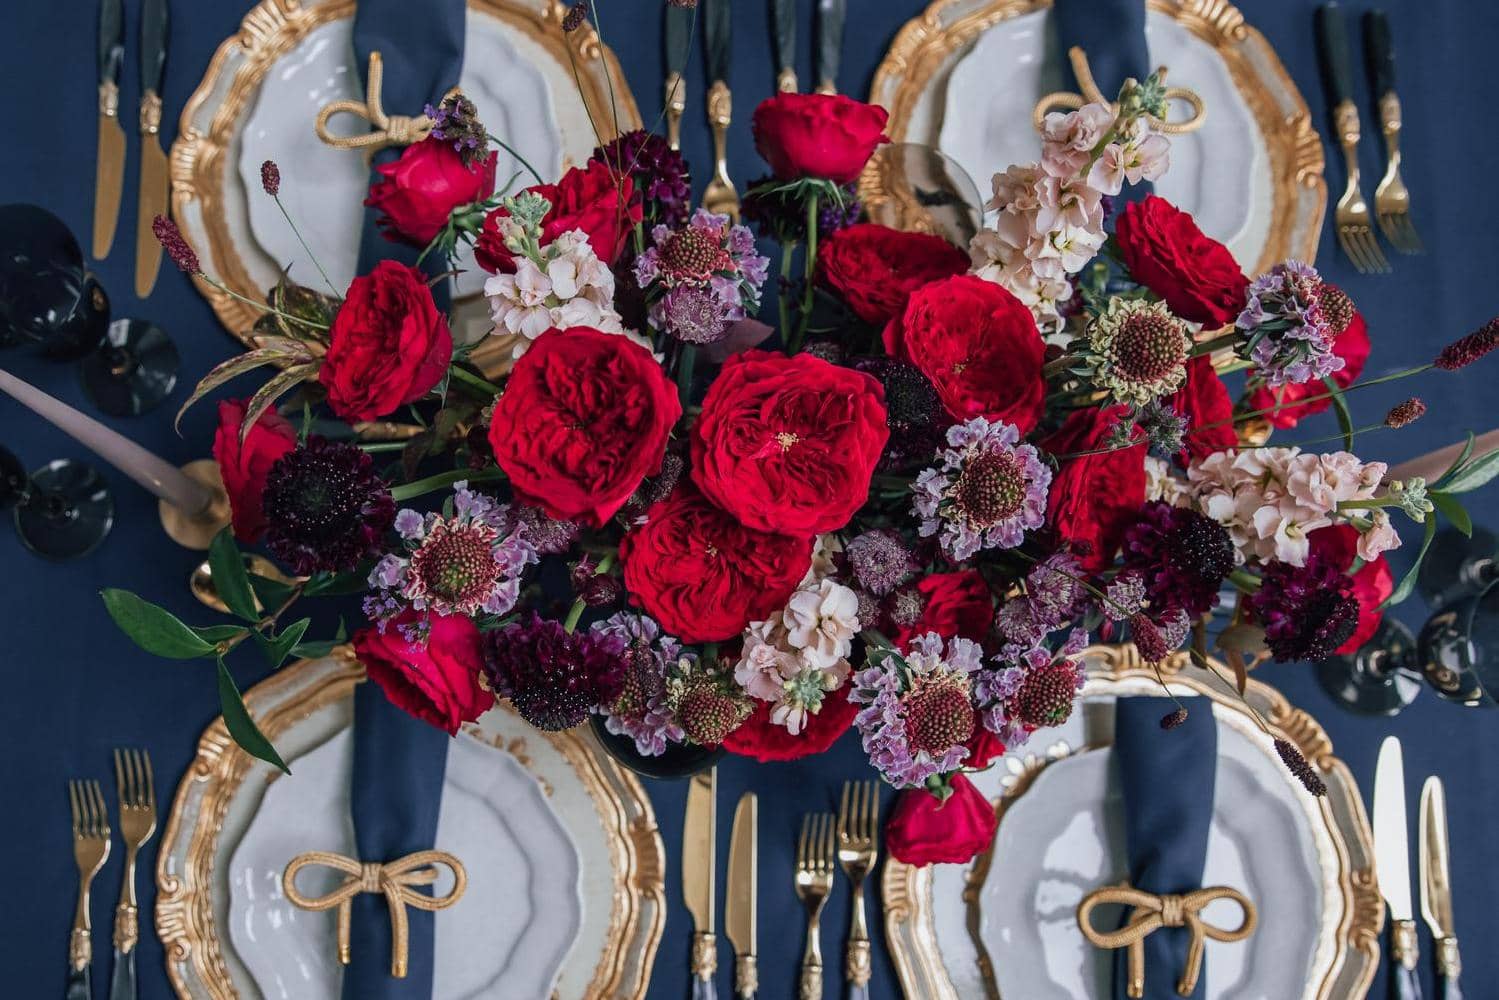 Tess Rote Rosen von David Austin Tischdekoration